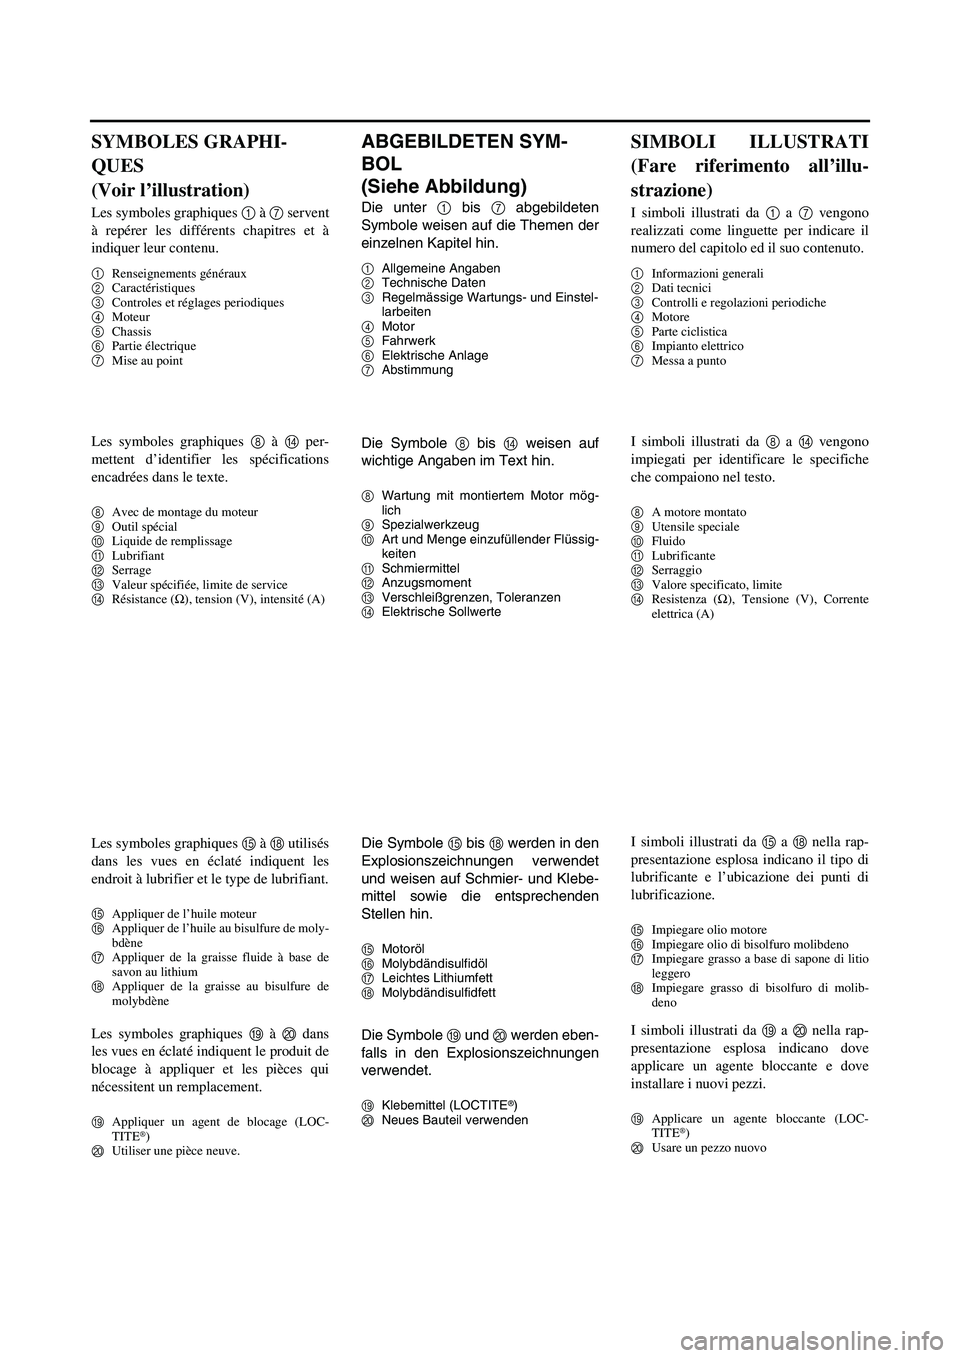 YAMAHA YZ250F 2007  Manuale duso (in Italian) ABGEBILDETEN SYM-
BOL 
(Siehe Abbildung)
Die unter 1 bis 7 abgebildeten
Symbole weisen auf die Themen der
einzelnen Kapitel hin.
1Allgemeine Angaben
2Technische Daten
3Regelmässige Wartungs- und Eins